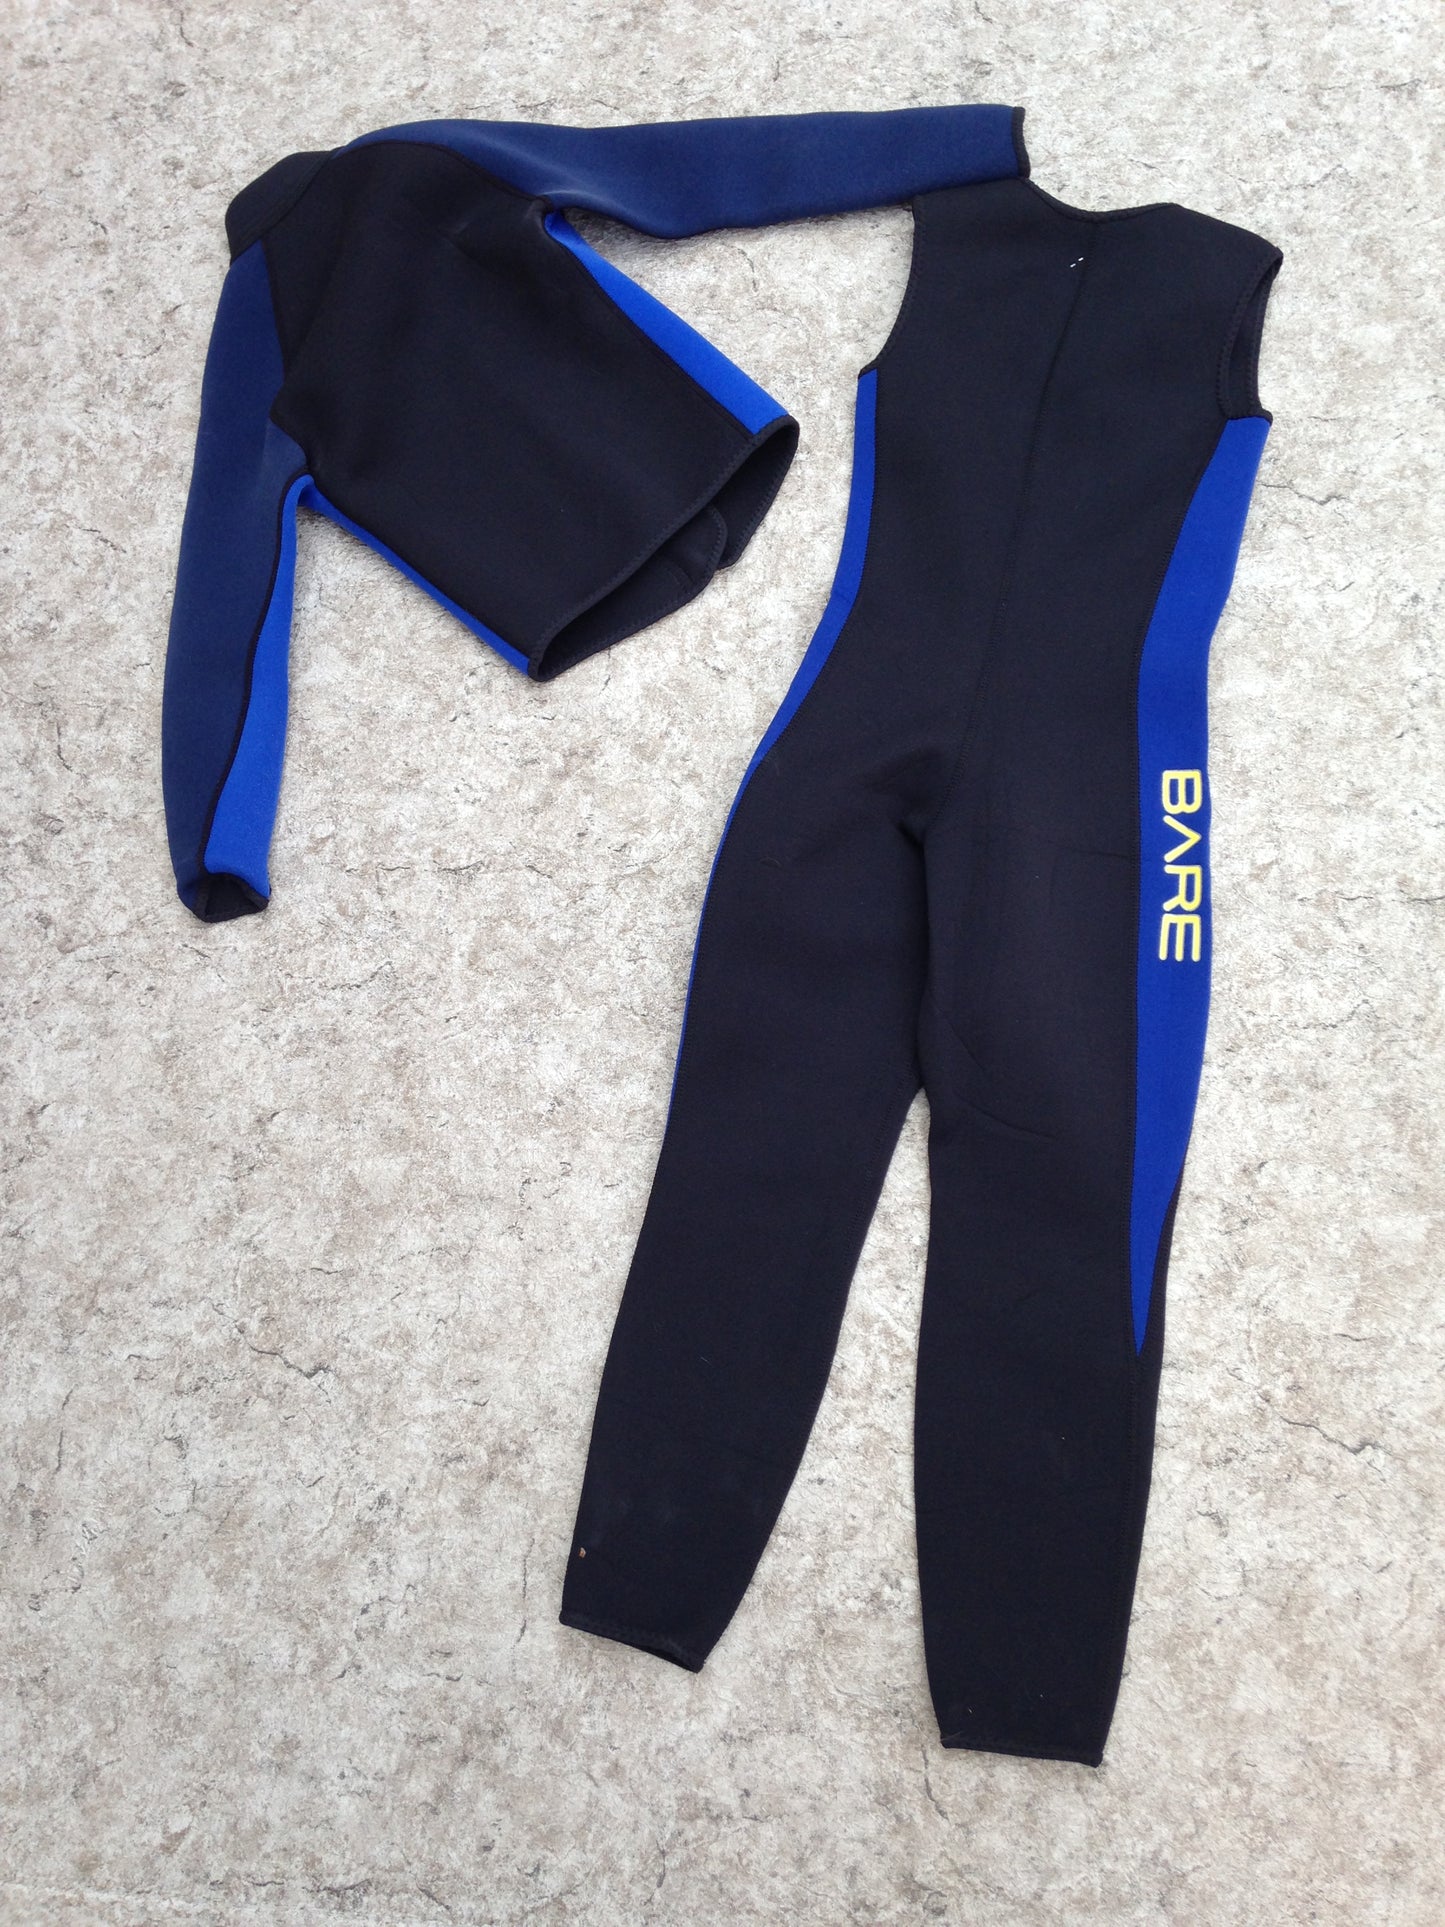 Wetsuit Child Size 8 Full John and Jacket 2-3 mm Neoprene Black Blue Minor Fading Jacket